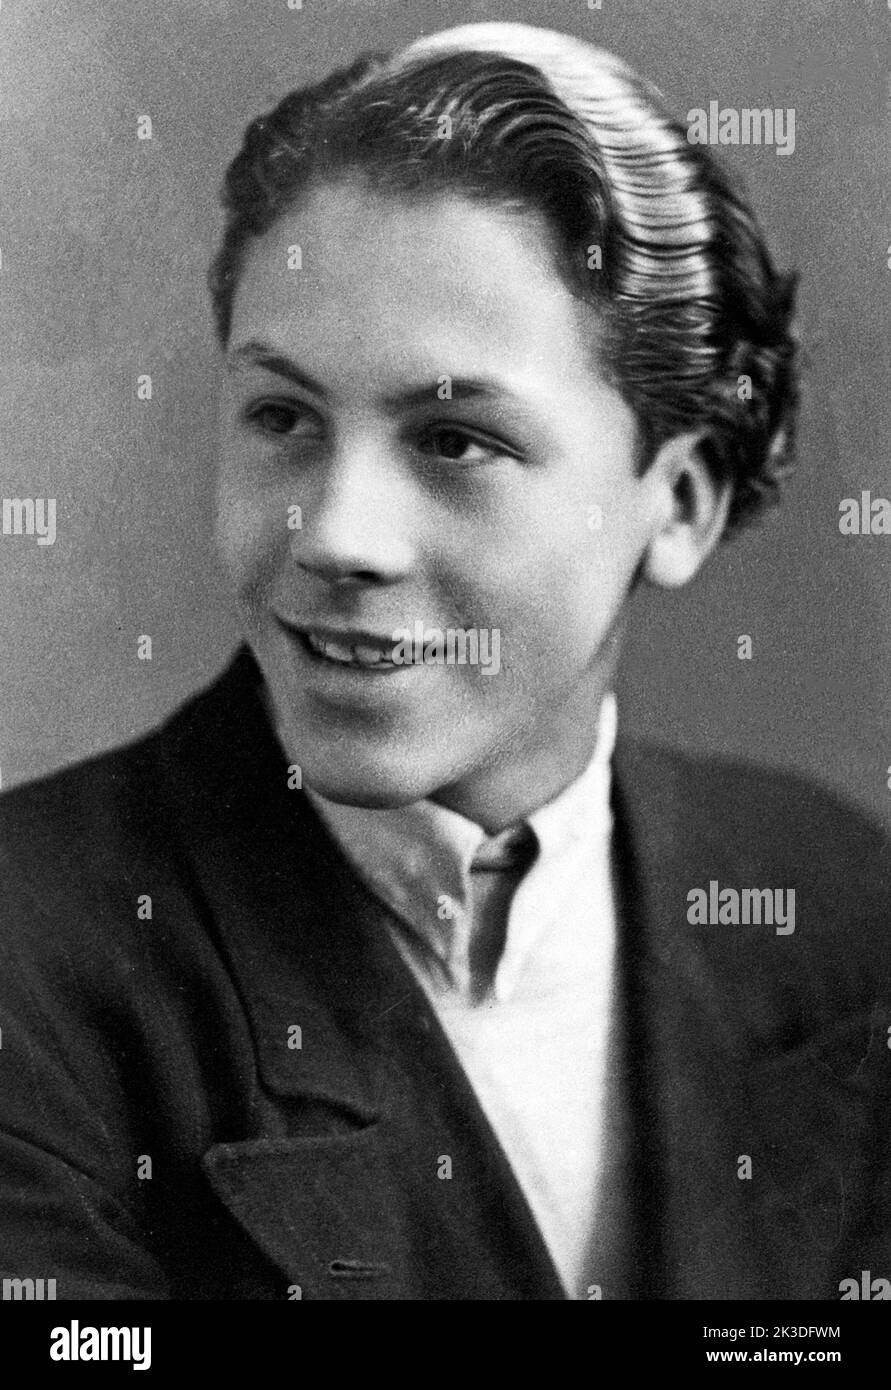 Studioporträt vom späteren Schauspieler Günter Lamprecht, Deutschland um 1946. Stock Photo